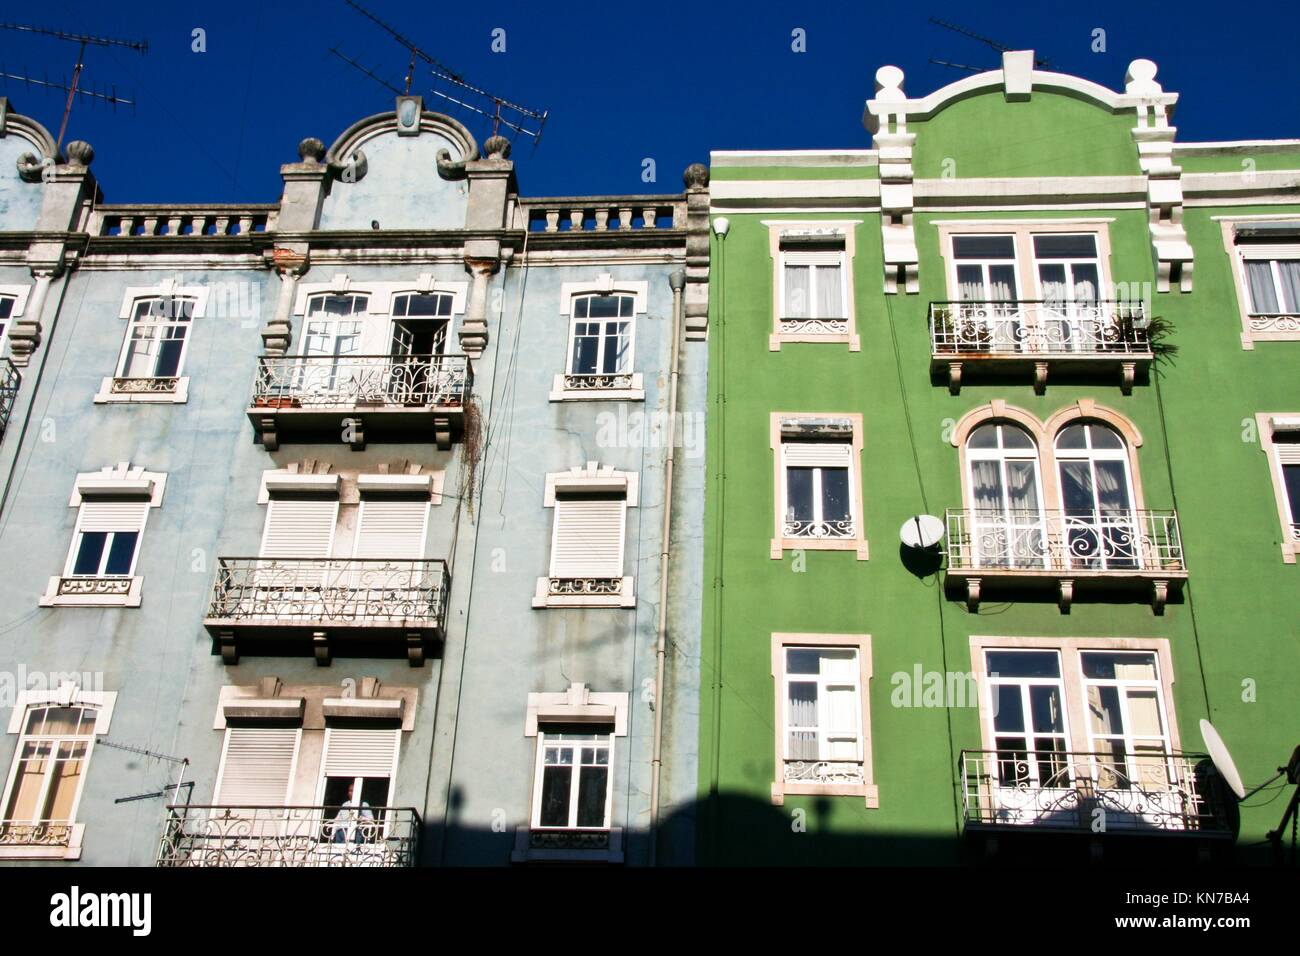 Bâtiment coloré du célèbre quartier centre-ville de Lisbonne, Portugal. Banque D'Images